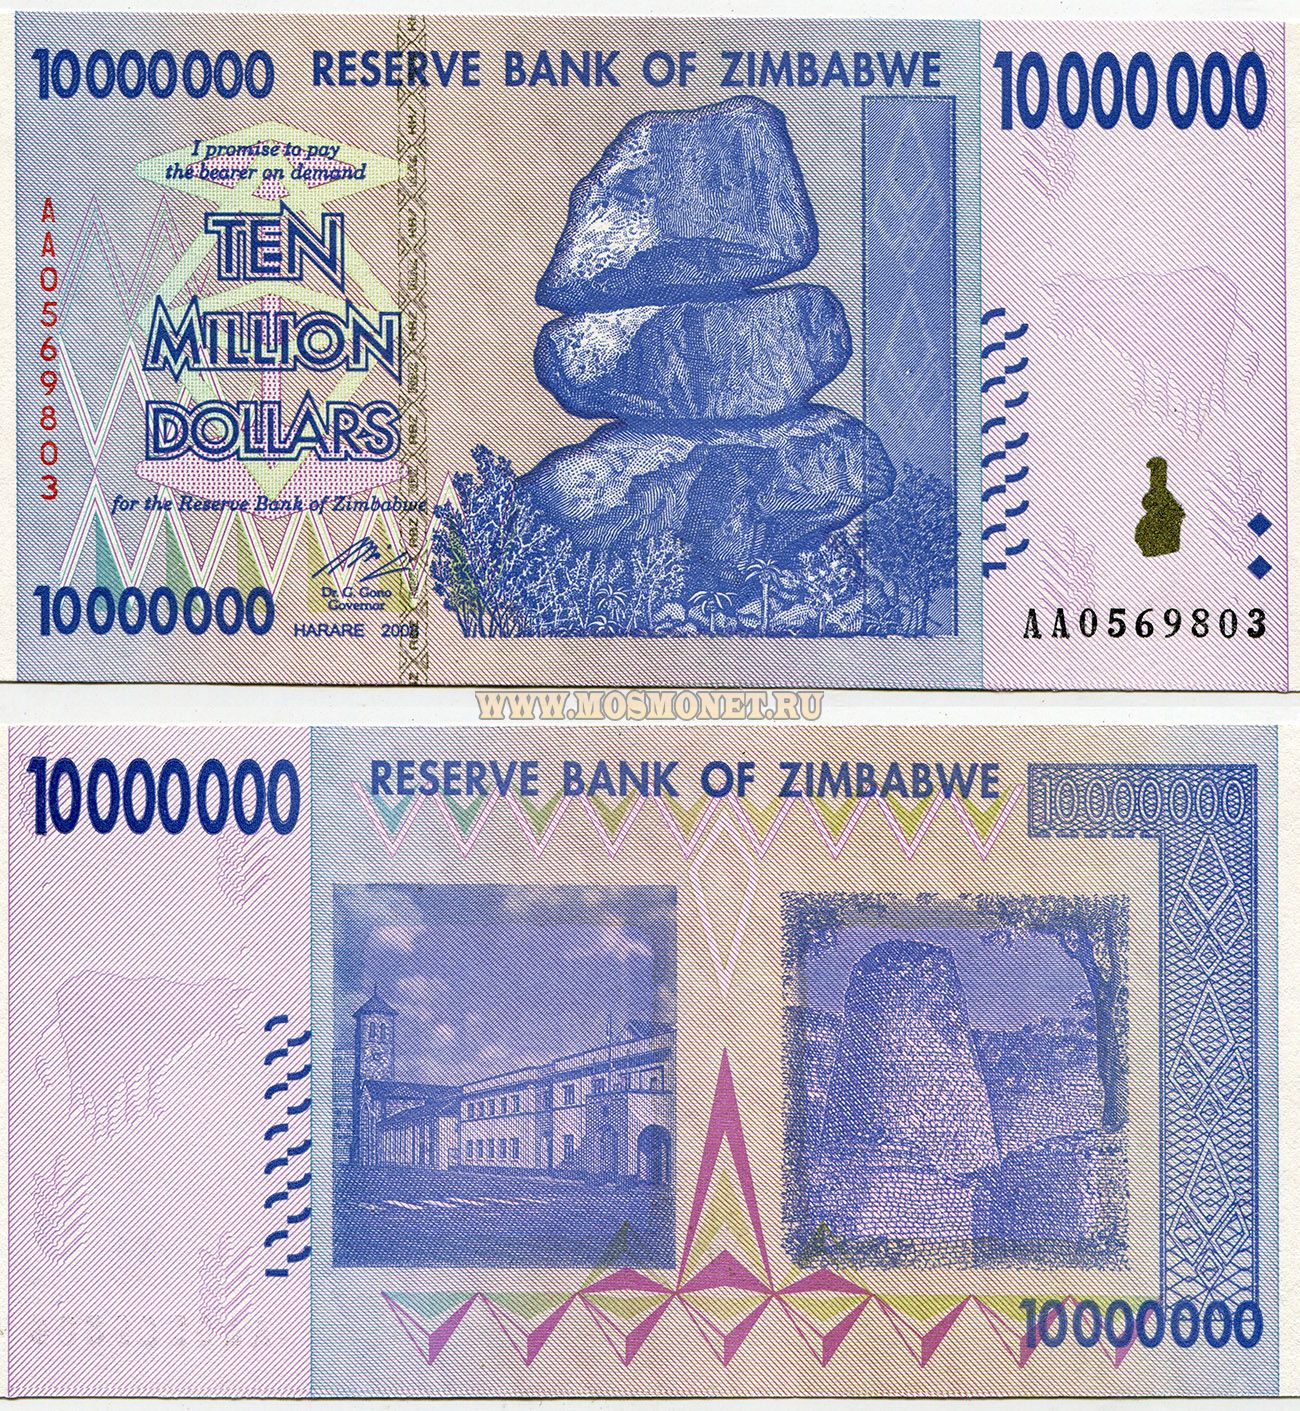 10000000000 долларов. Купюра Биллион зимбабвийских долларов. Купюра 10000000000 Зимбабве. Банкнота 10 триллионов Зимбабве. Купюра 10 триллионов долларов Зимбабве.